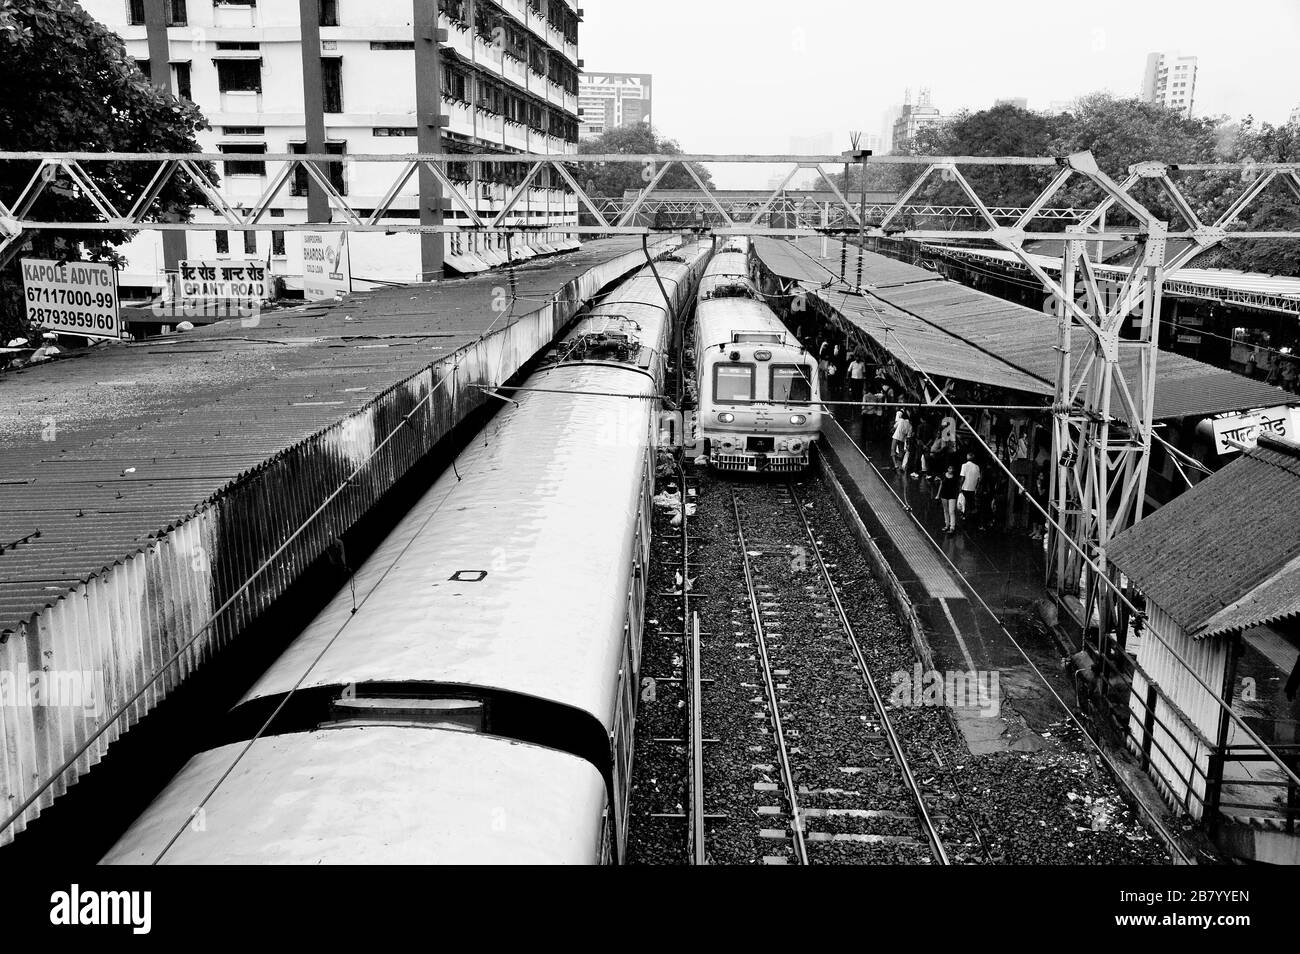 Local train, Grant Road station, Bombay, Mumbai, Maharashtra, India, Asia Stock Photo